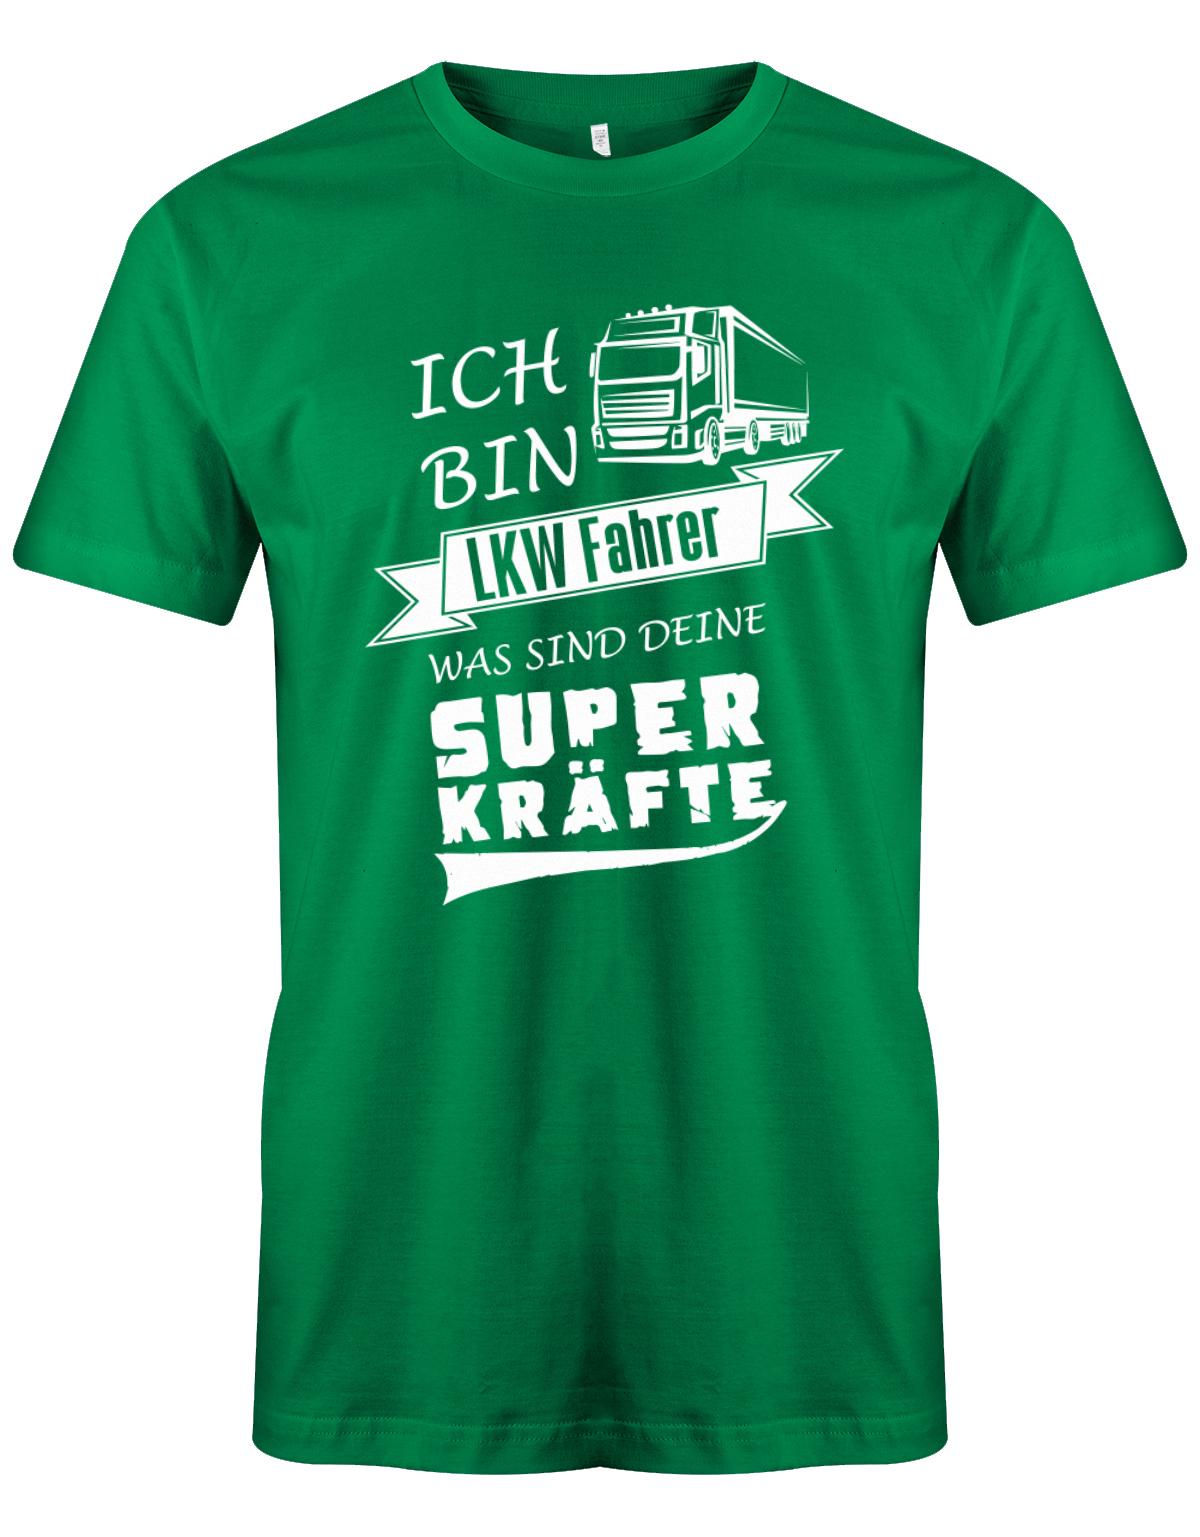 Lkw-Fahrer Shirt - Ich bin Lkw-Fahrer, was sind deine Superkräfte? Grün